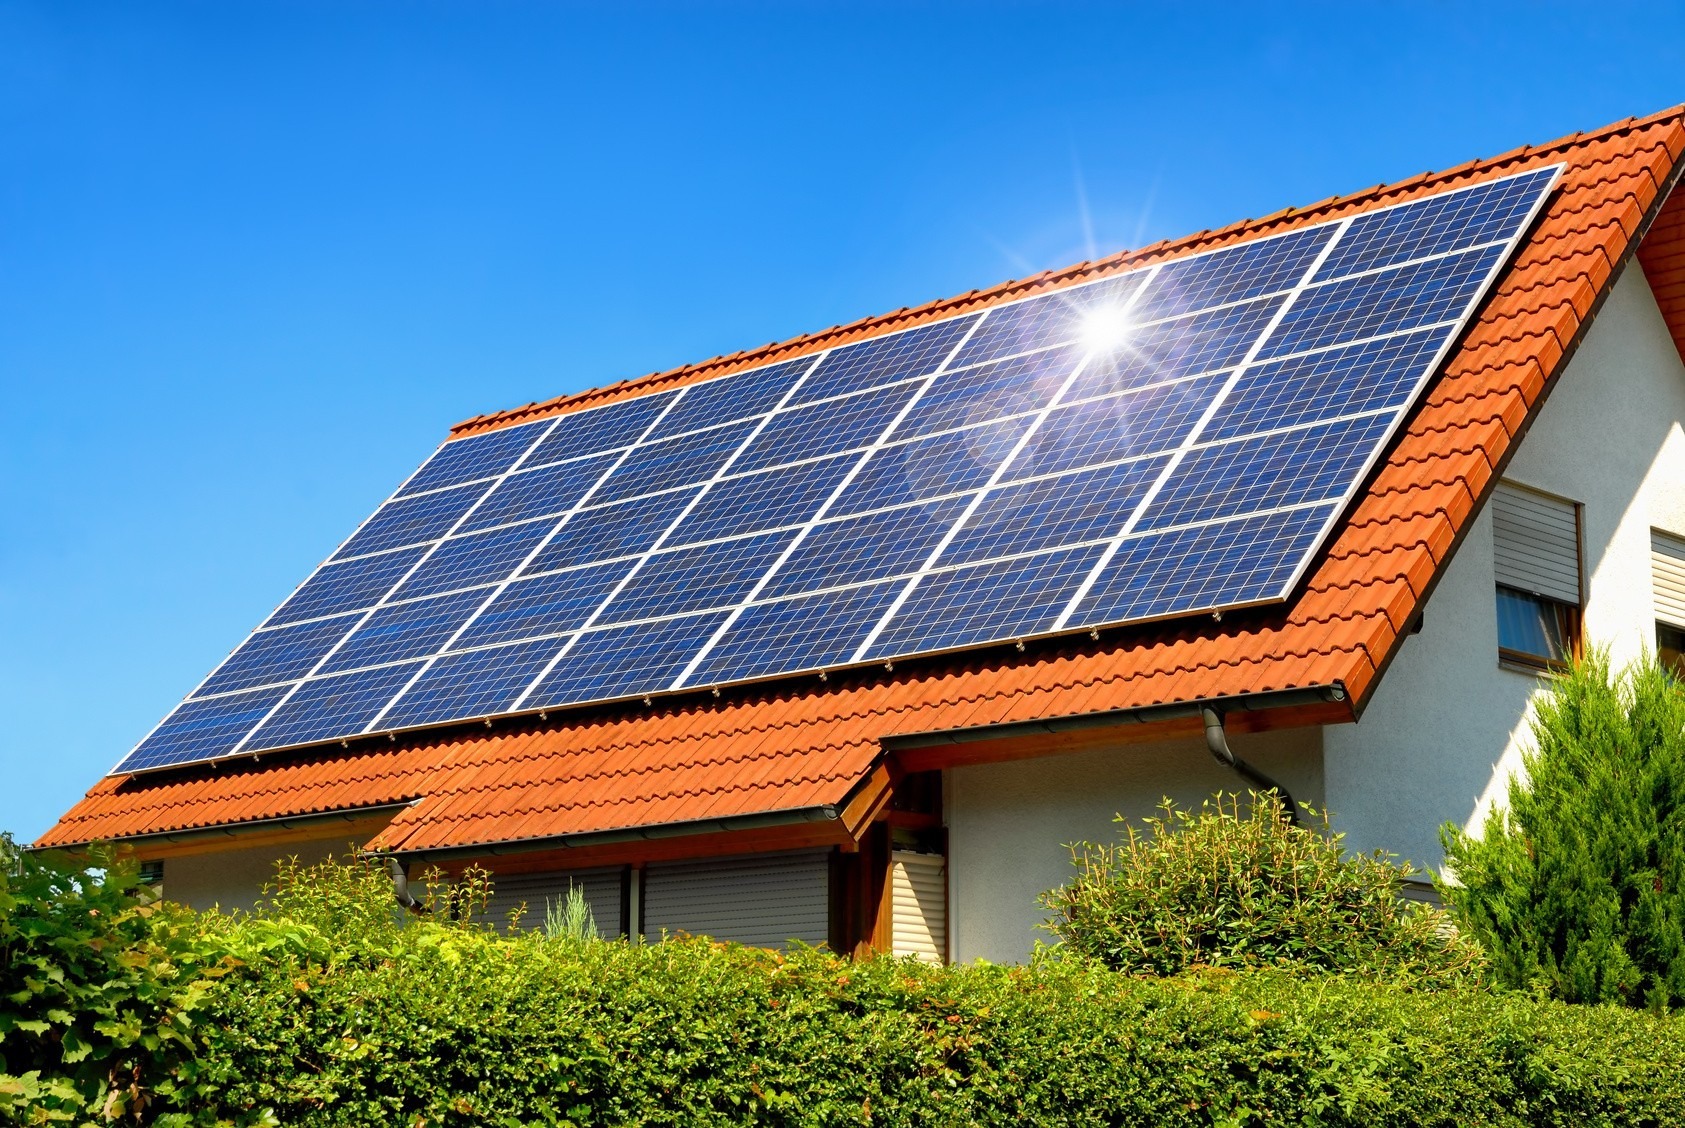 Impianto fotovoltaico a isola: come funziona e perché conviene